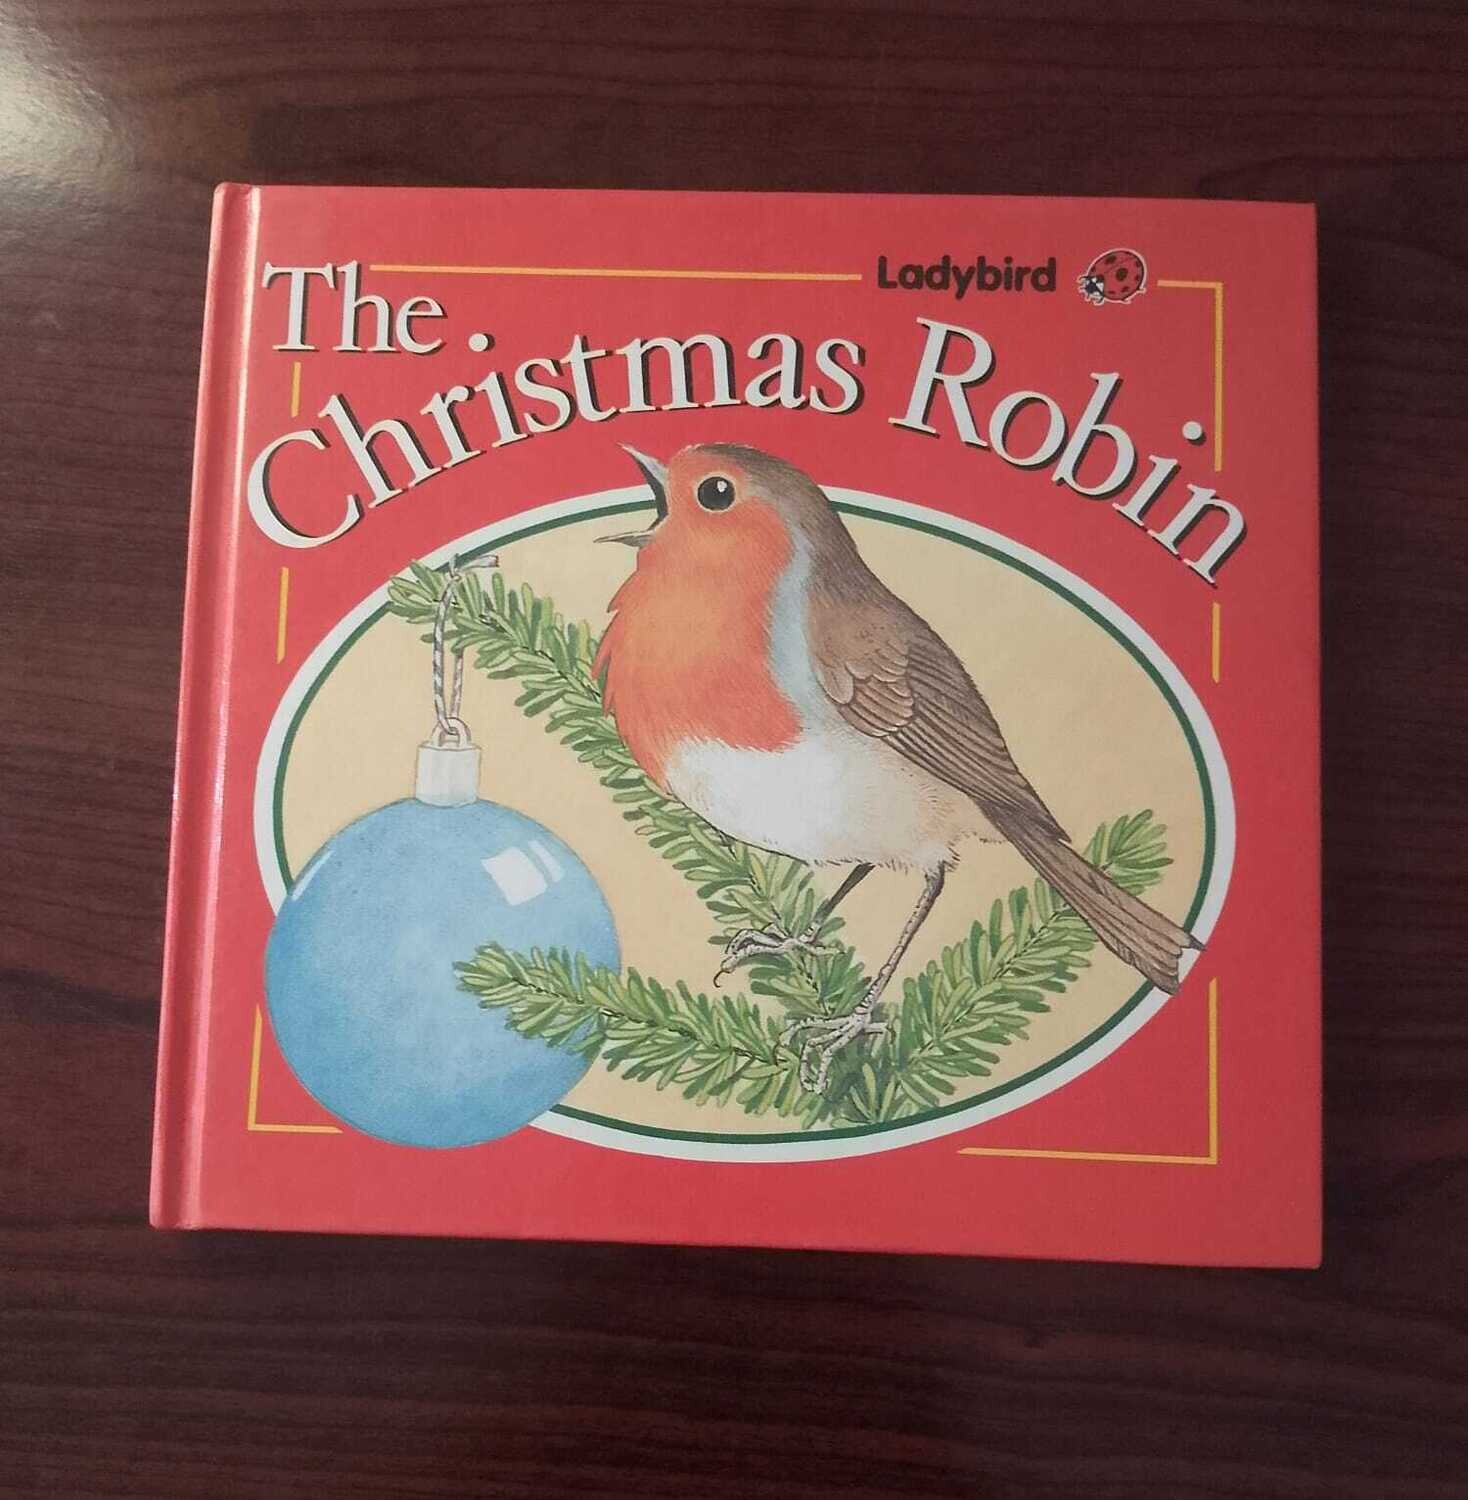 The Christmas robin